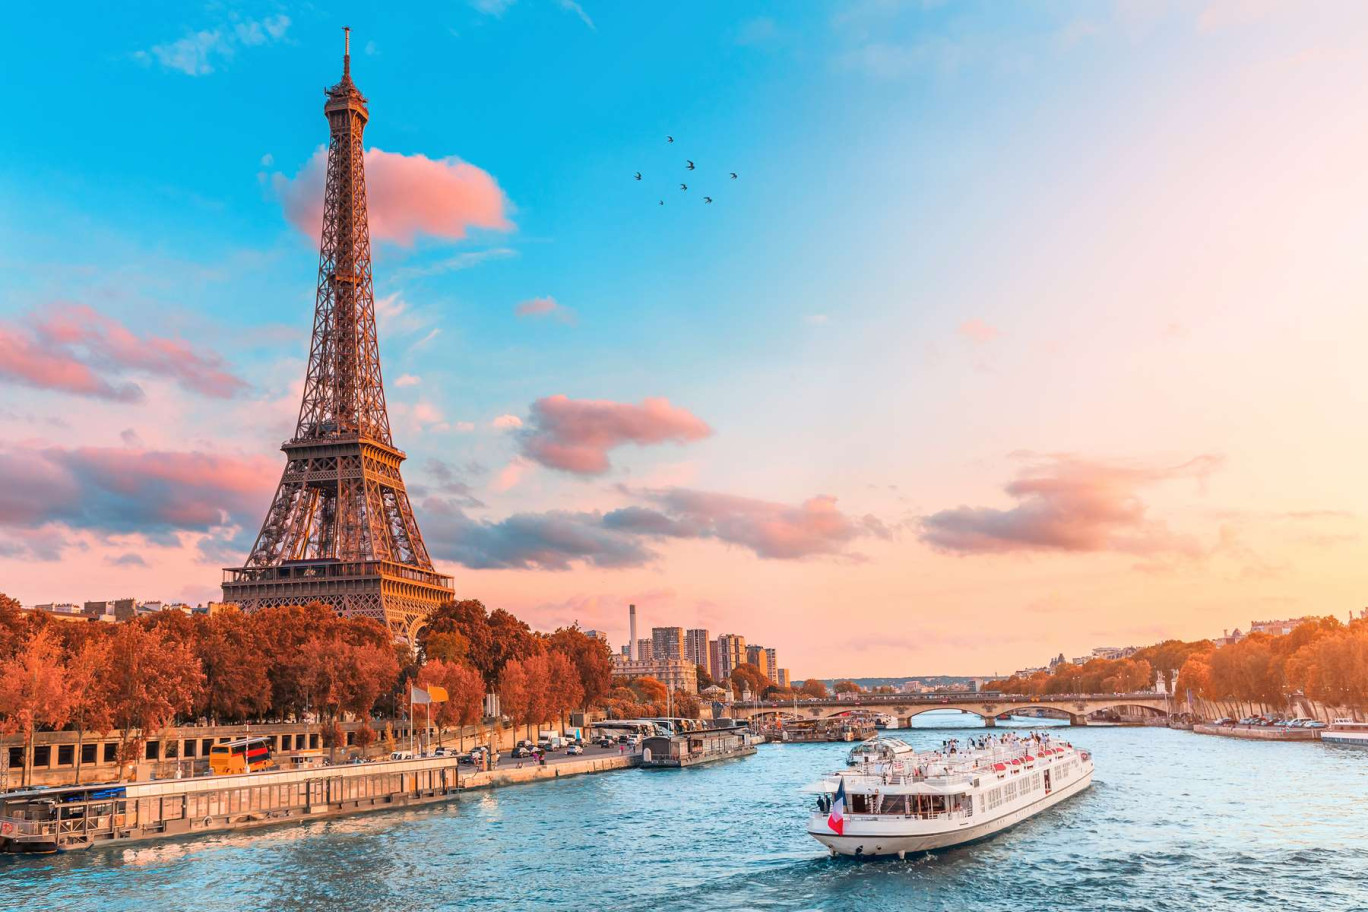 Sur les bateaux promenade à Paris, environ la moitié des clients proviennent des autres régions françaises et les étrangers sont majoritairement européens.(c)AdobeStock